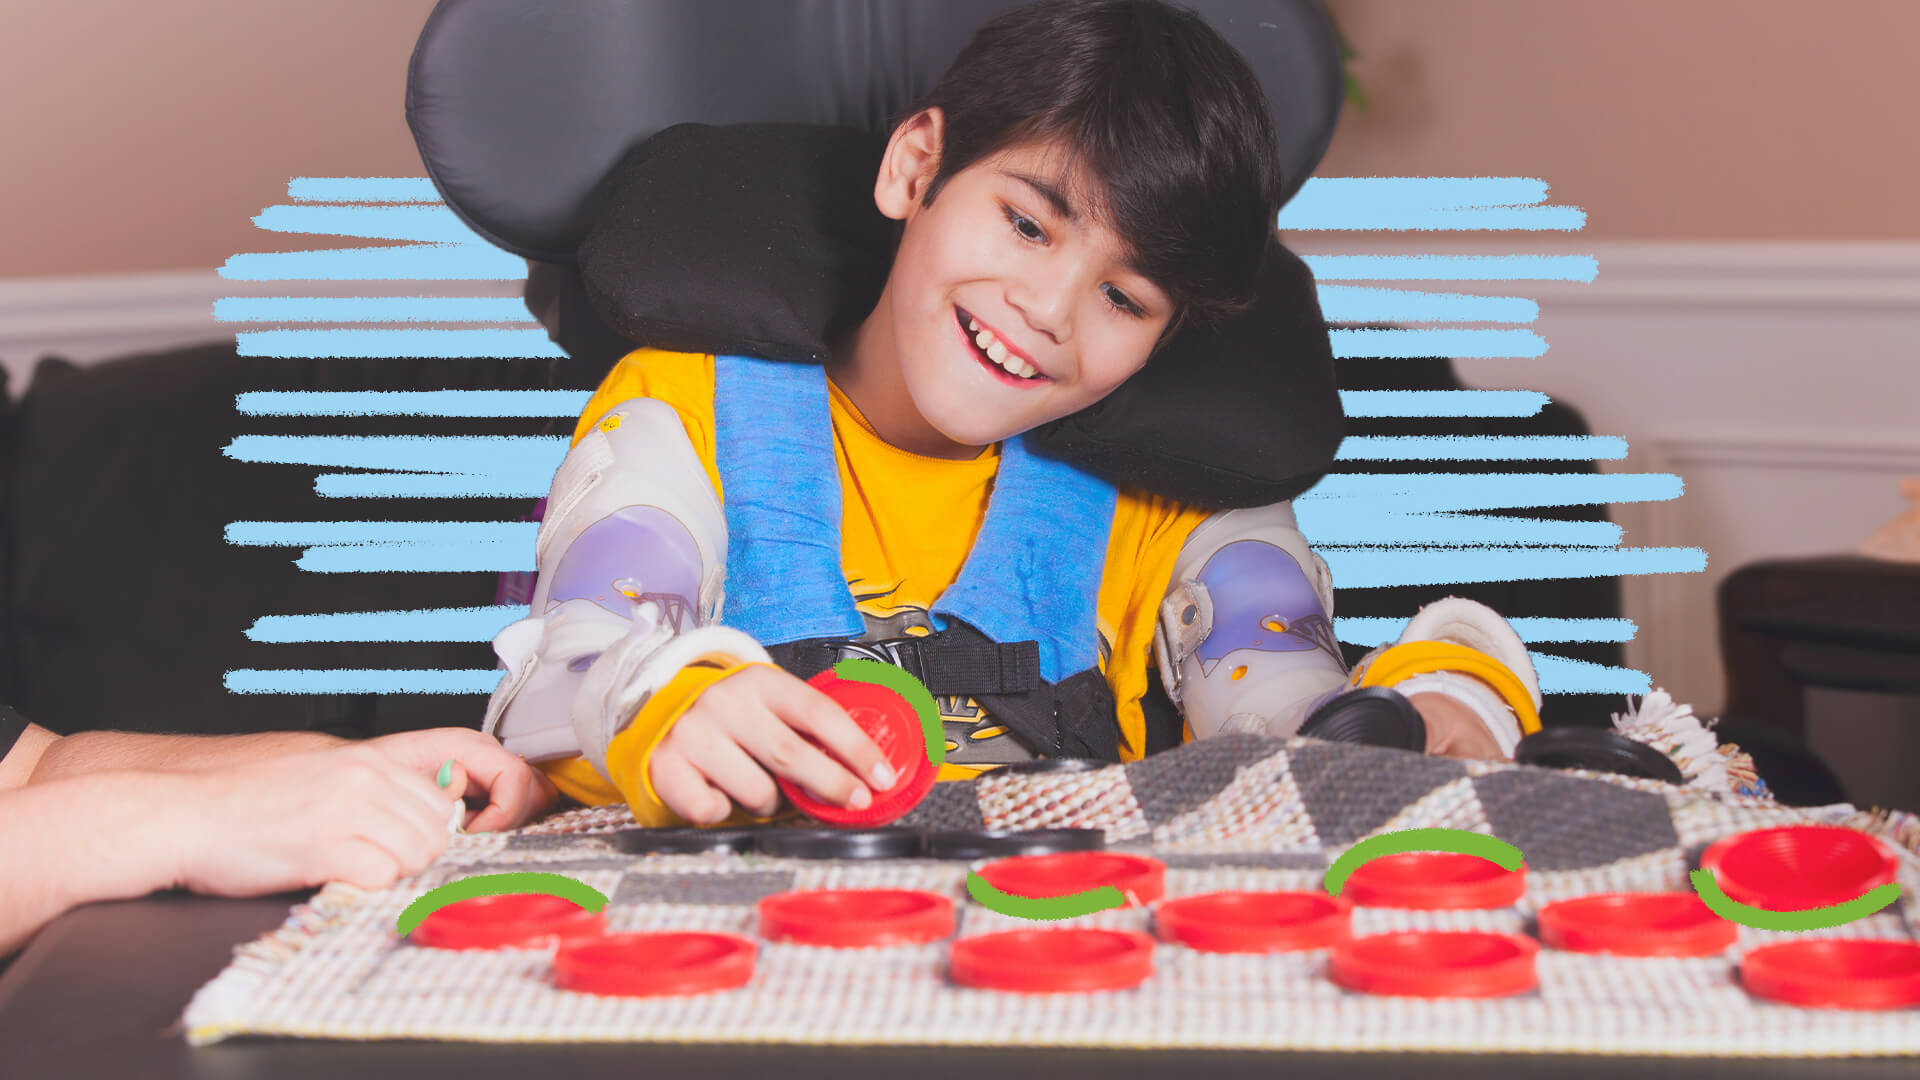 Na foto, uma criança de pele clara joga damas, em um tabuleiro de tecido com peças vermelhas. A imagem possui intervenções de rabiscos coloridos.